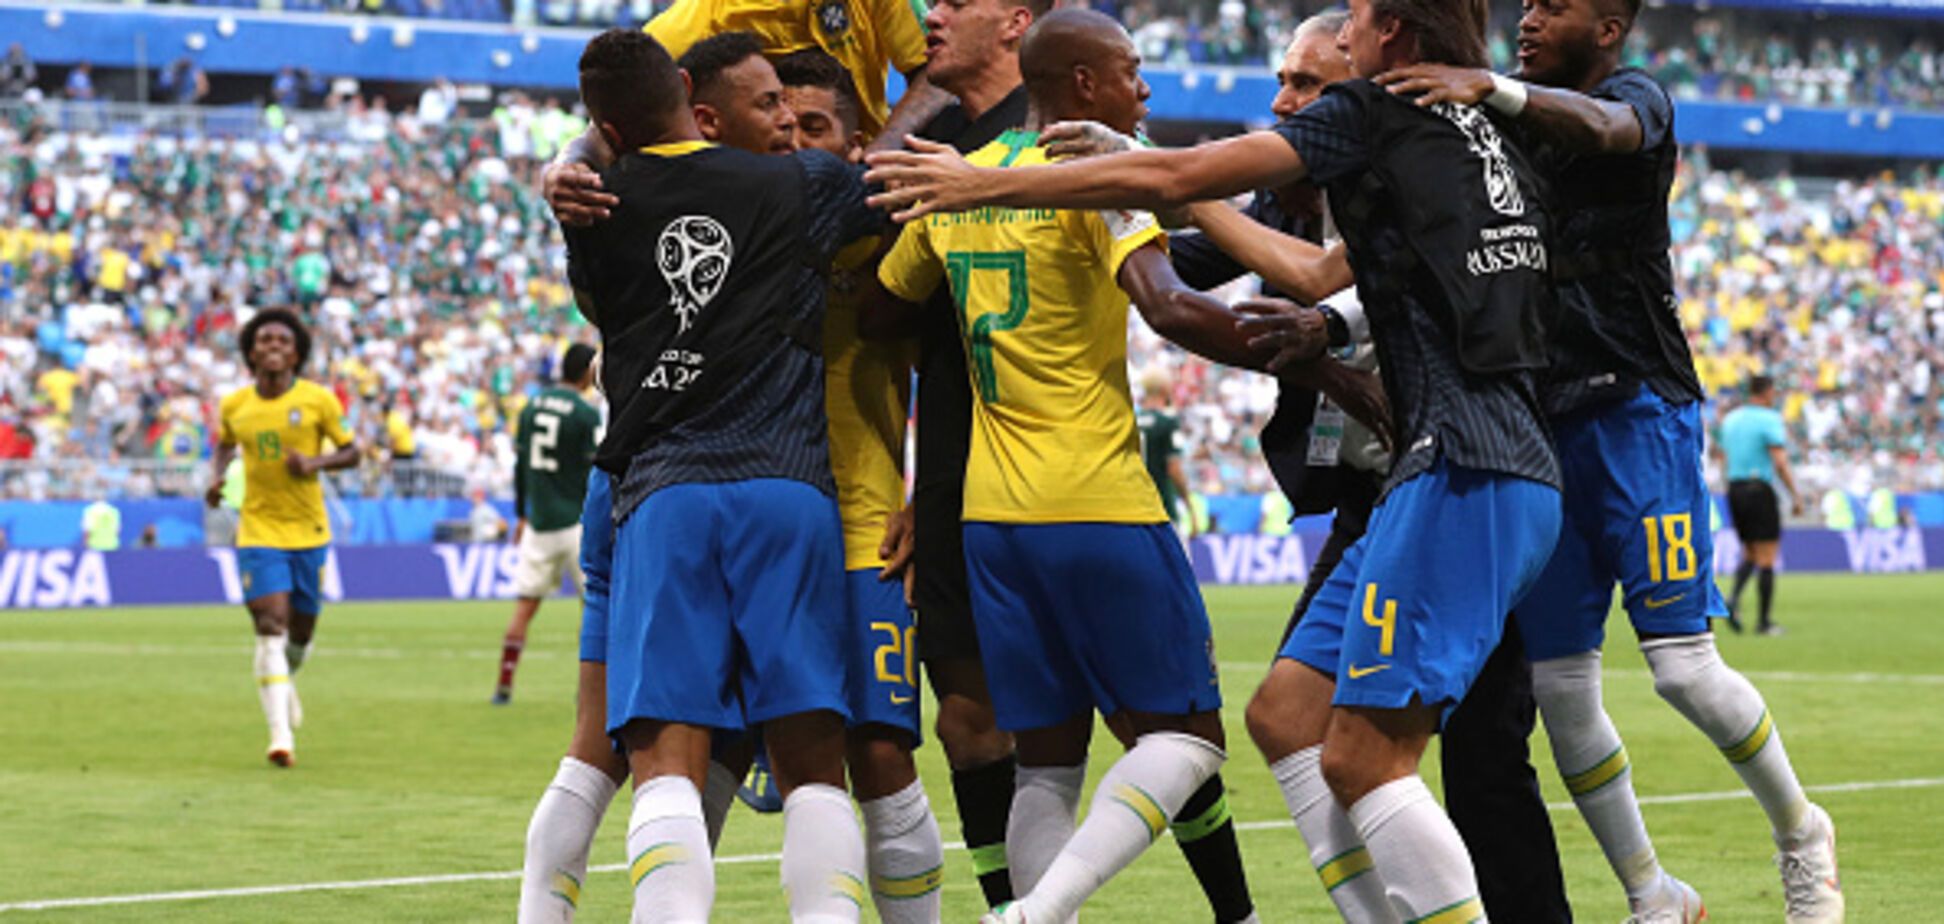 Бразилия уверенно вышла в четвертьфинал ЧМ-2018